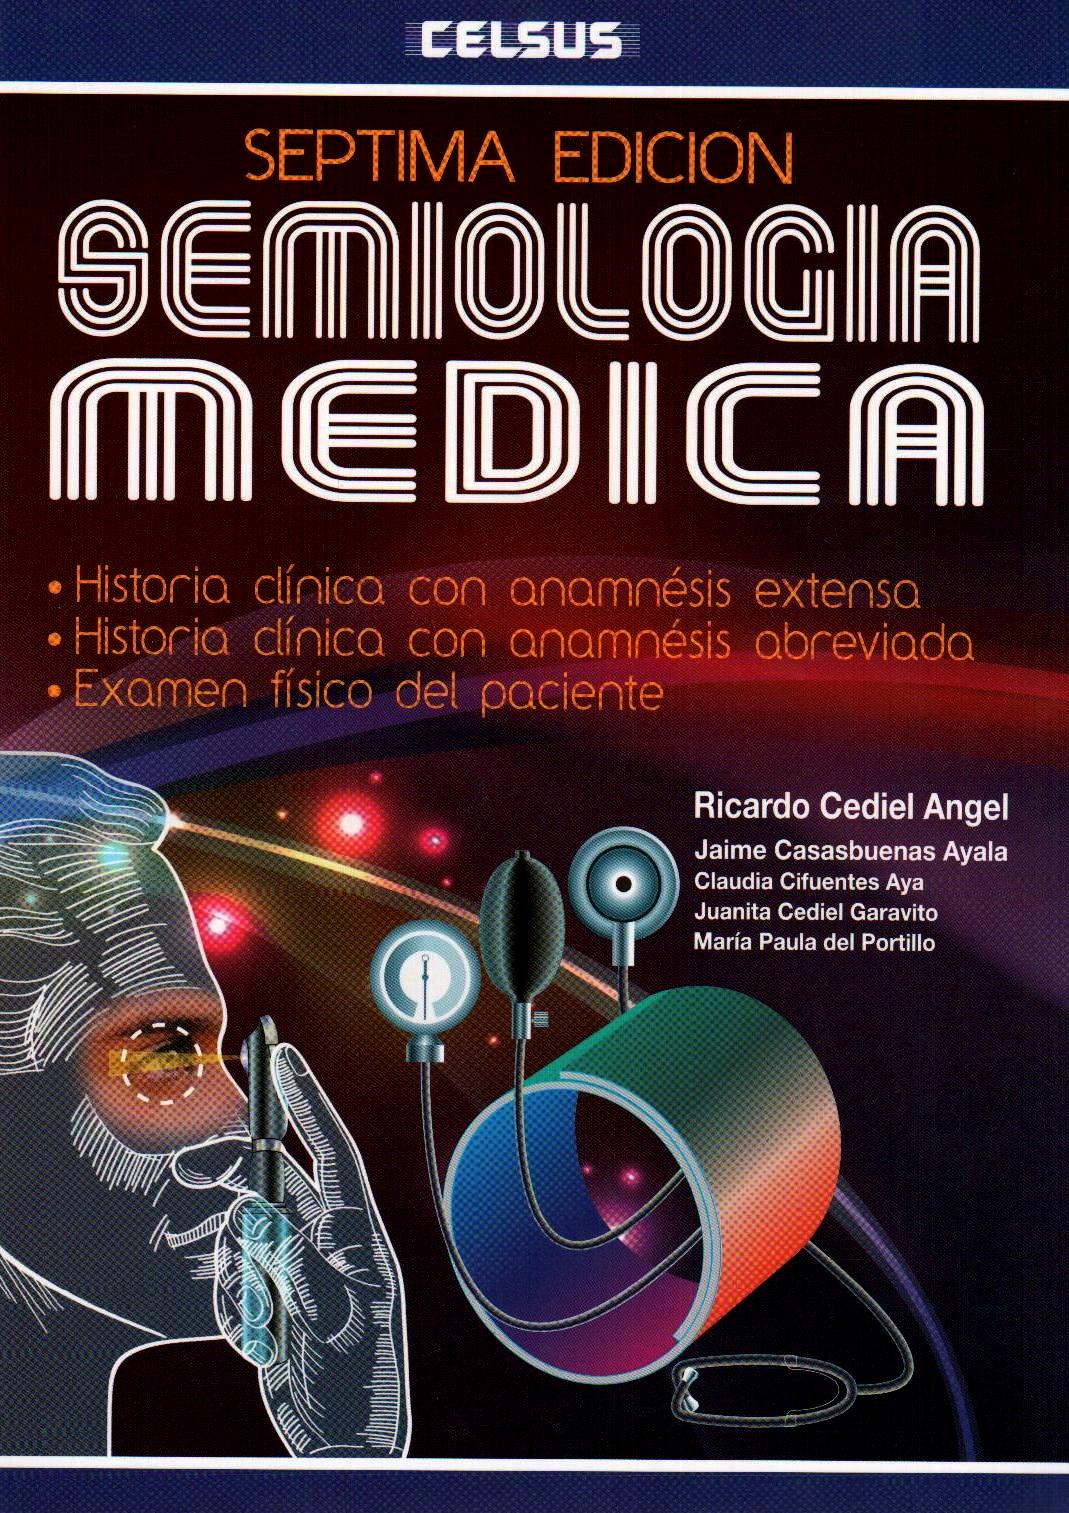 CEDIEL SEMIOLOGIA MEDICA 7a Ed - Semiología, Propedéutica y Materia Clínica